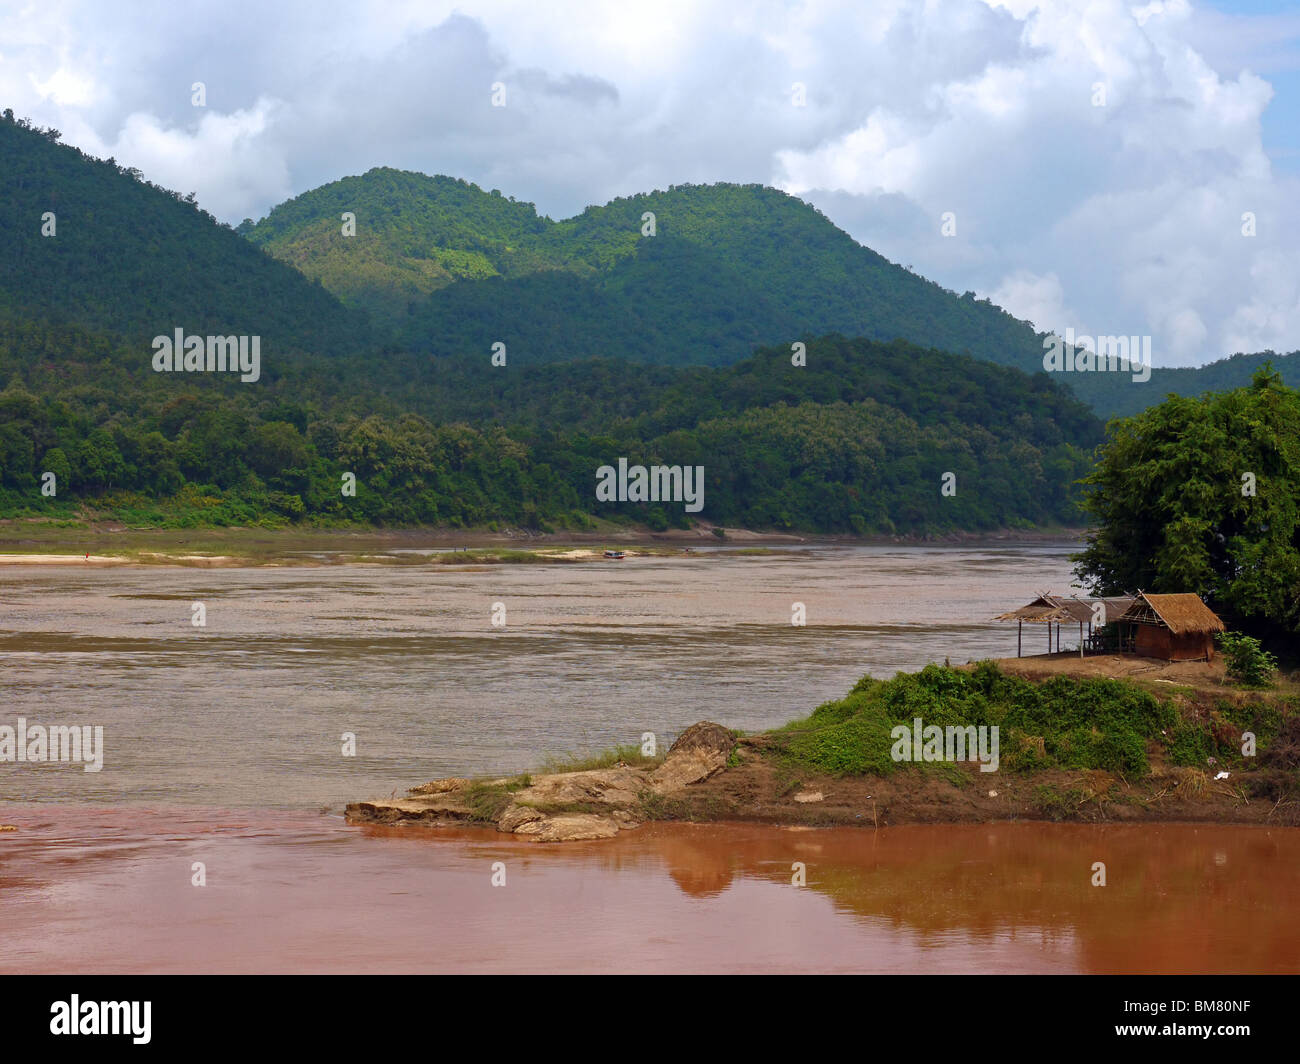 Mekong river in Luang Prabang province at rain season, Northern Laos Stock Photo